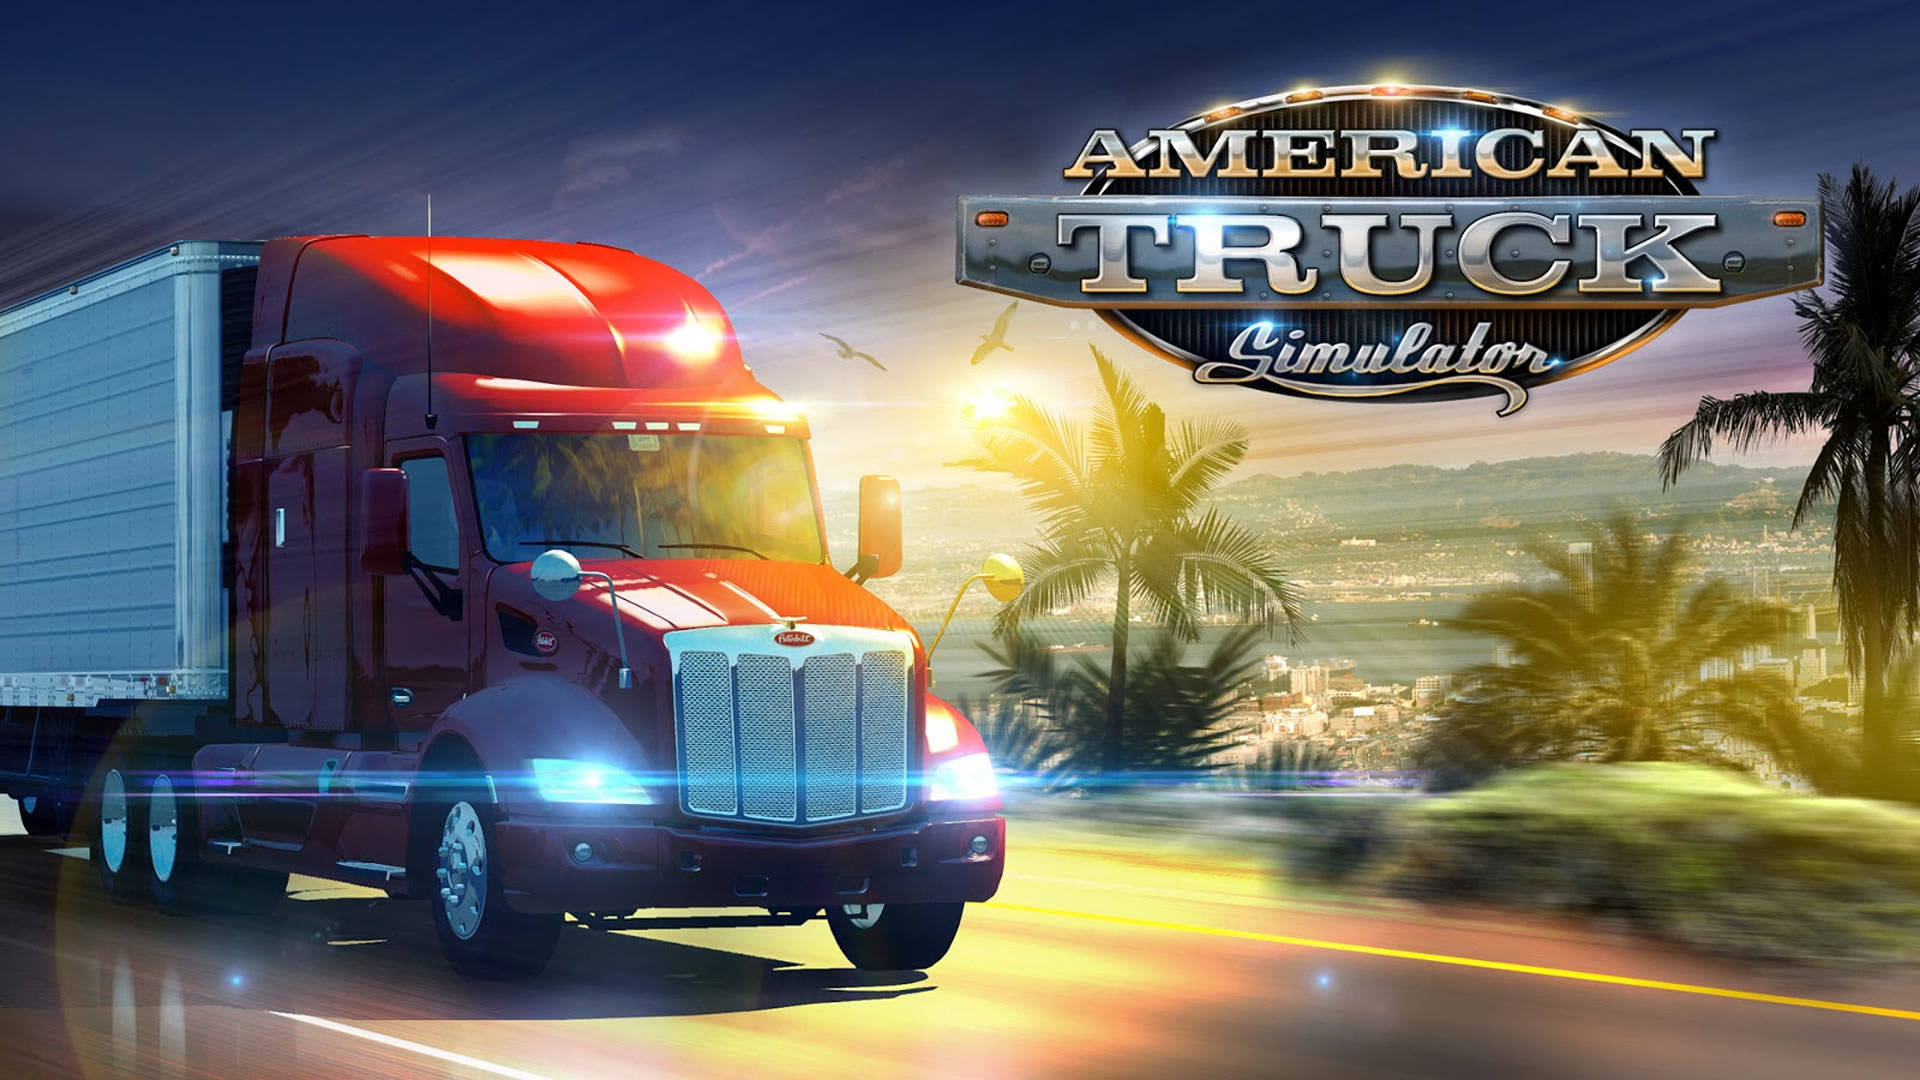 American Truck Simulator Game Cover Art Wallpaper